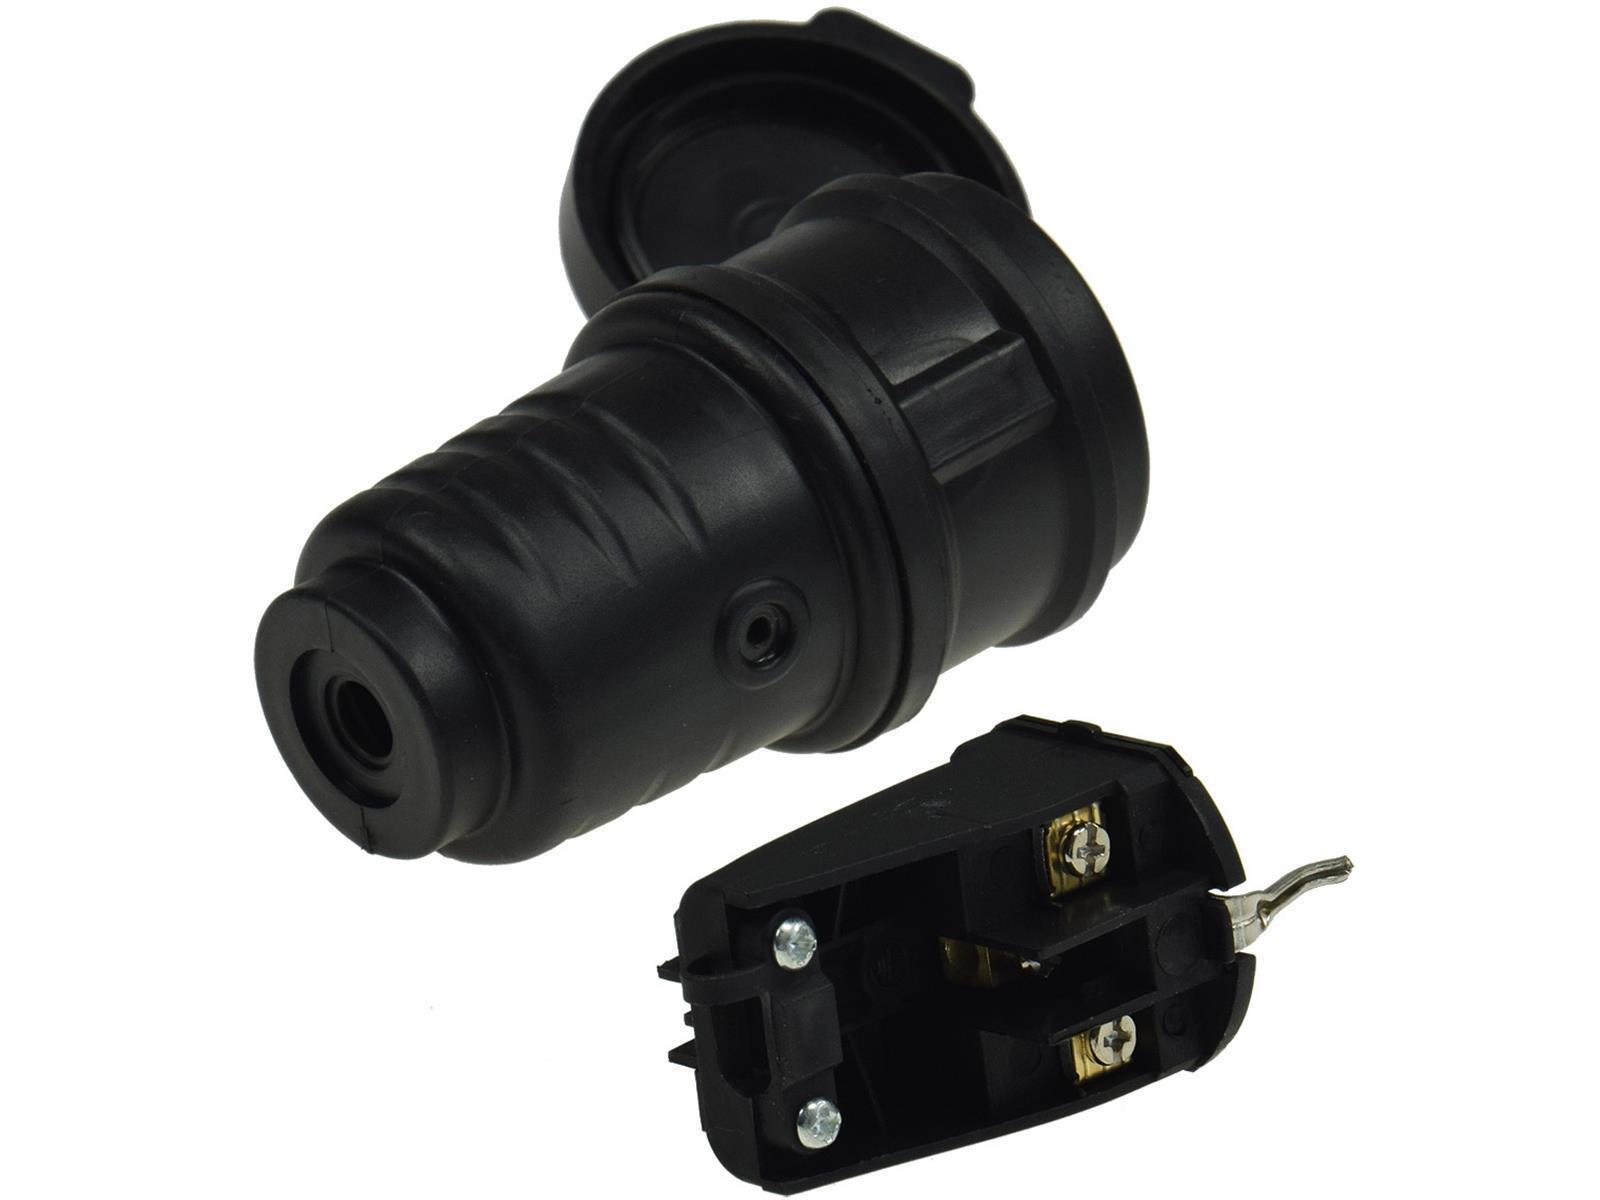 Schutzkontakt-Gummikupplung für AußenSchutzkappe, 250V/16A, IP44